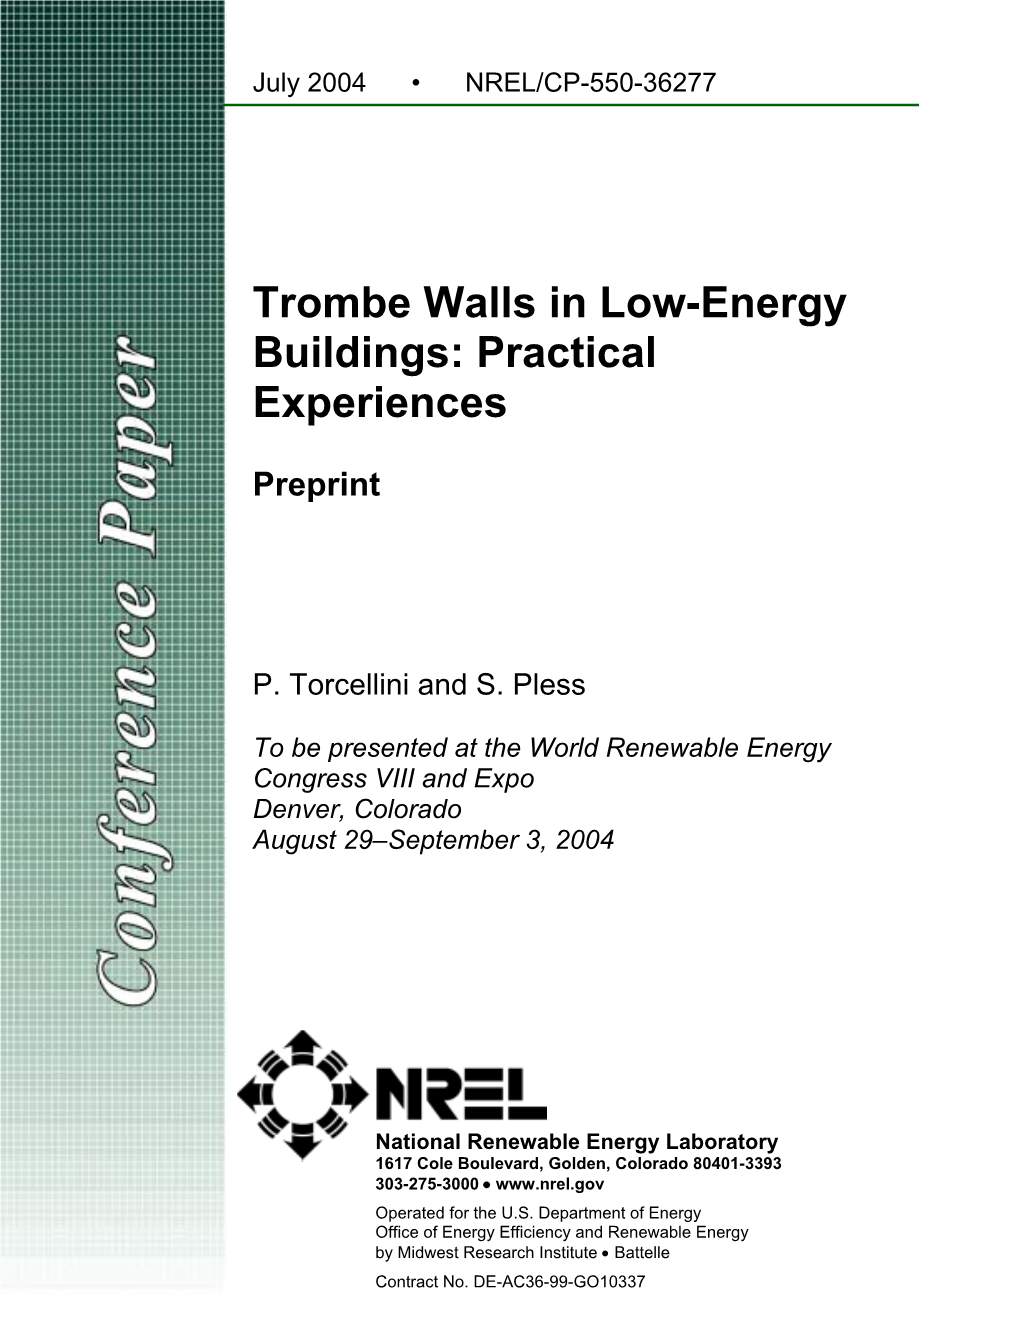 Trombe Walls in Low-Energy Buildings: Practical